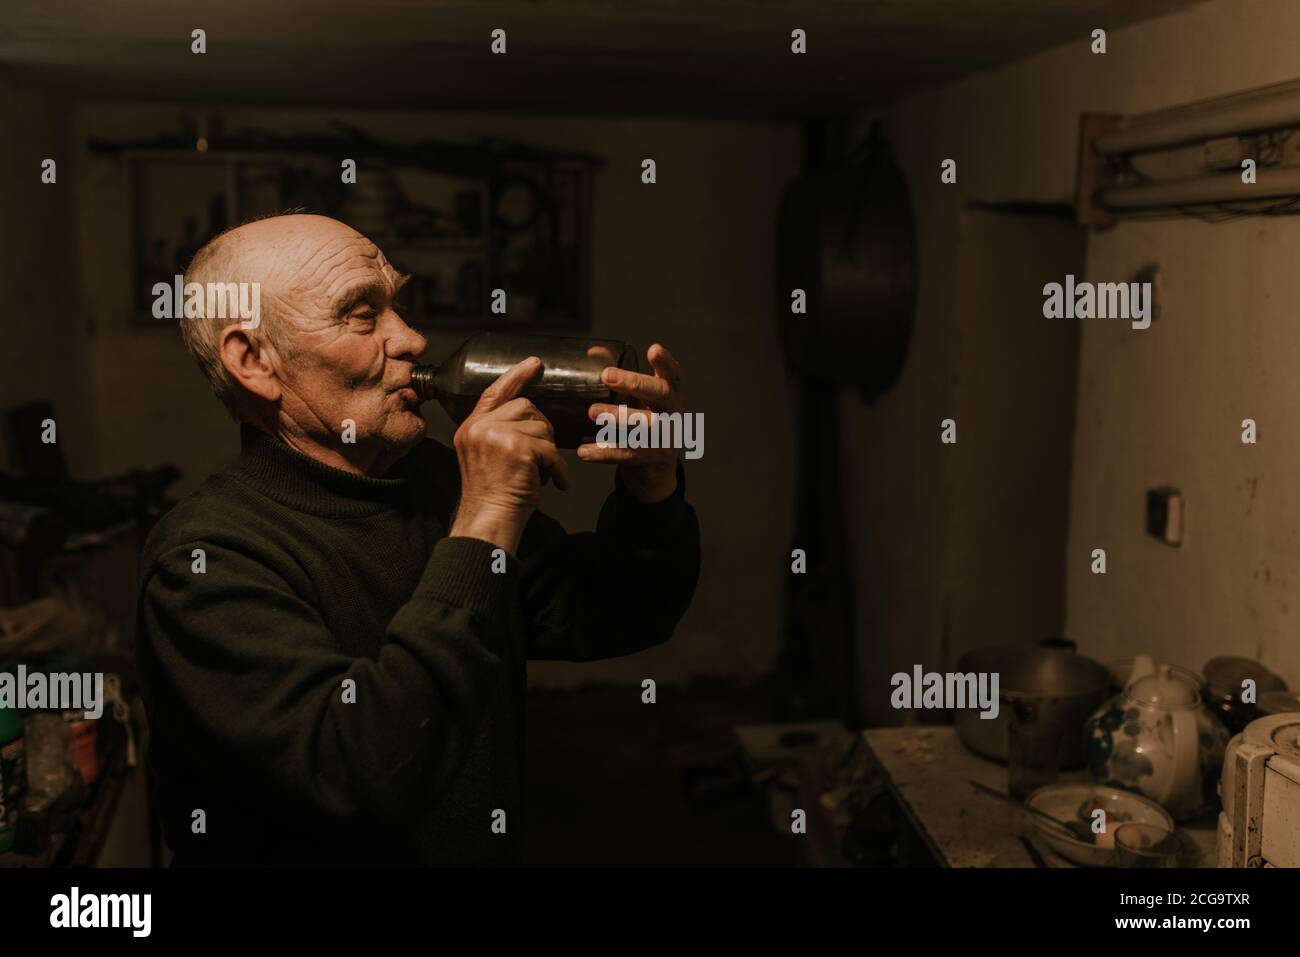 el viejo hombre de pelo gris con arrugas profundas bebe vino tinto casero de una botella de vidrio en el oscuro sótano de la casa. Foto de stock